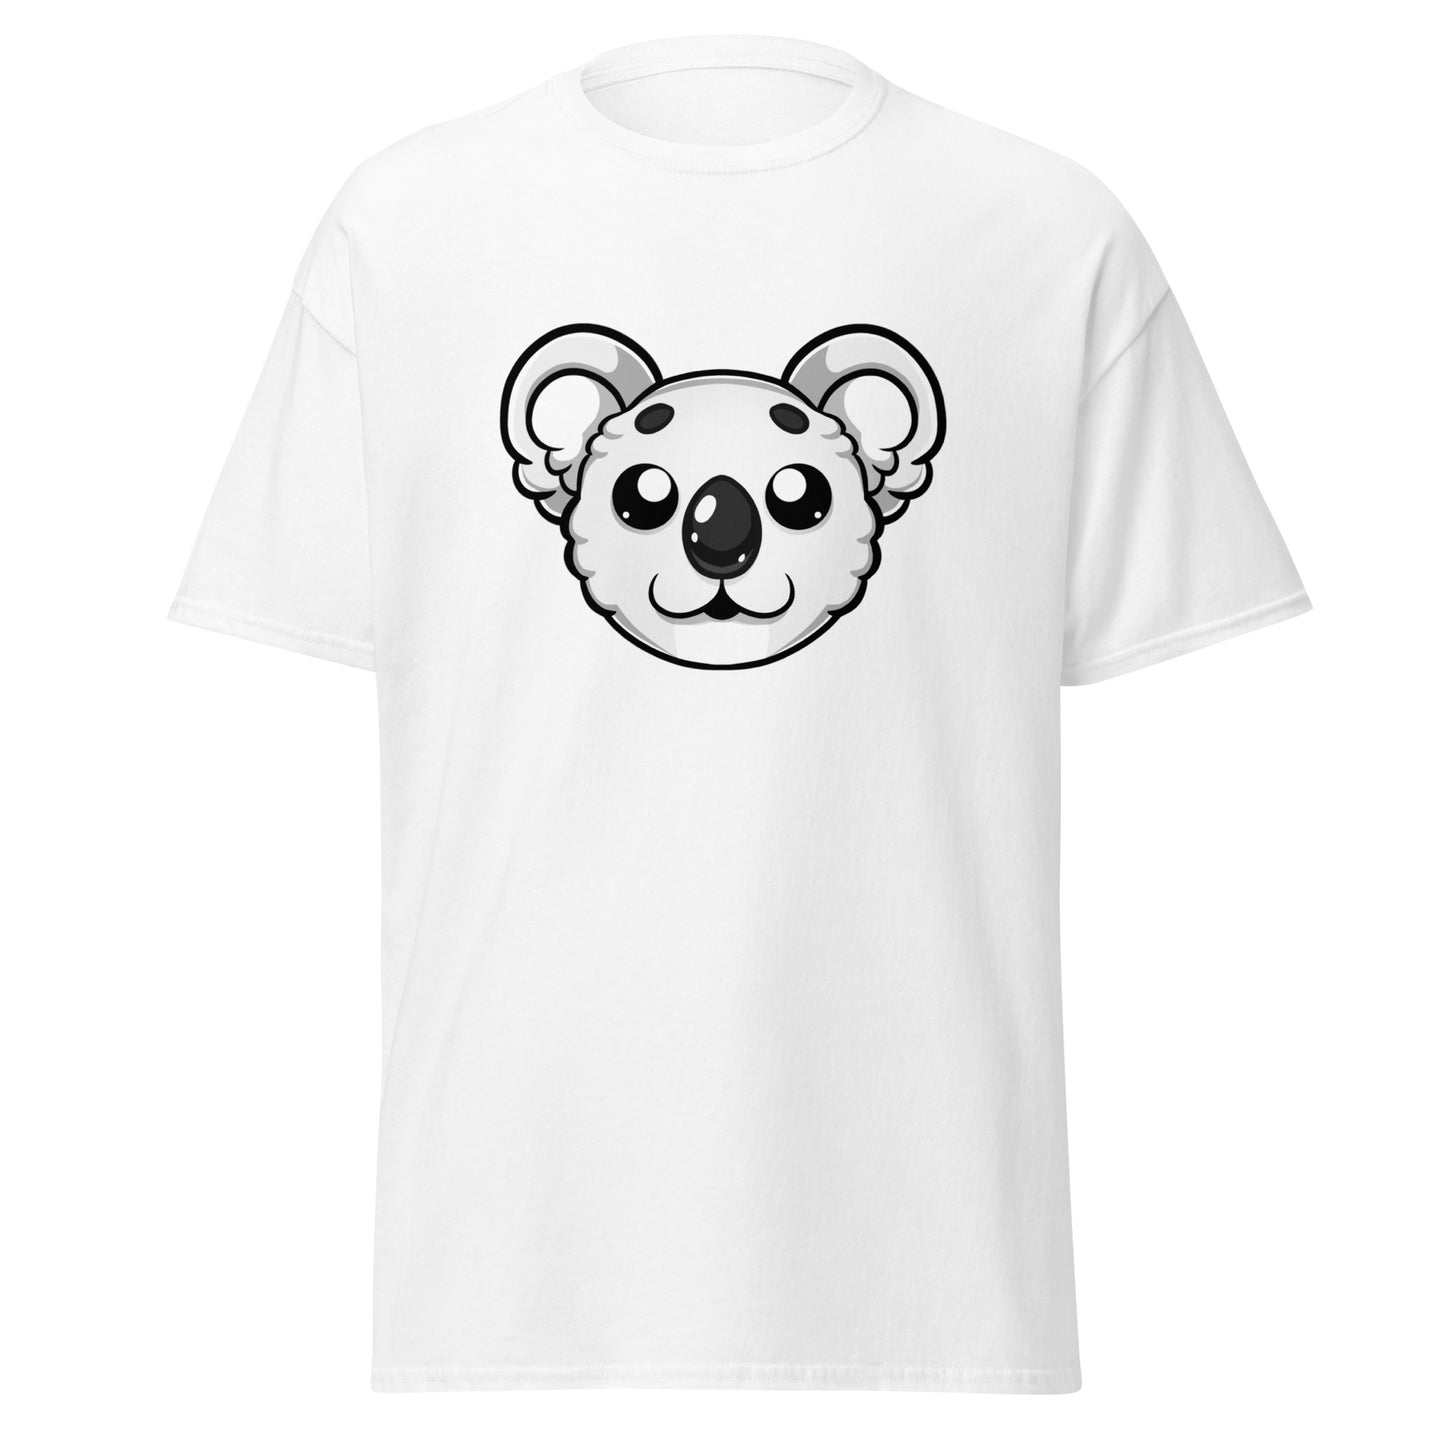 White Koala Gamer/Streamer T-Shirt - Soft, Comfy, & Unique Design